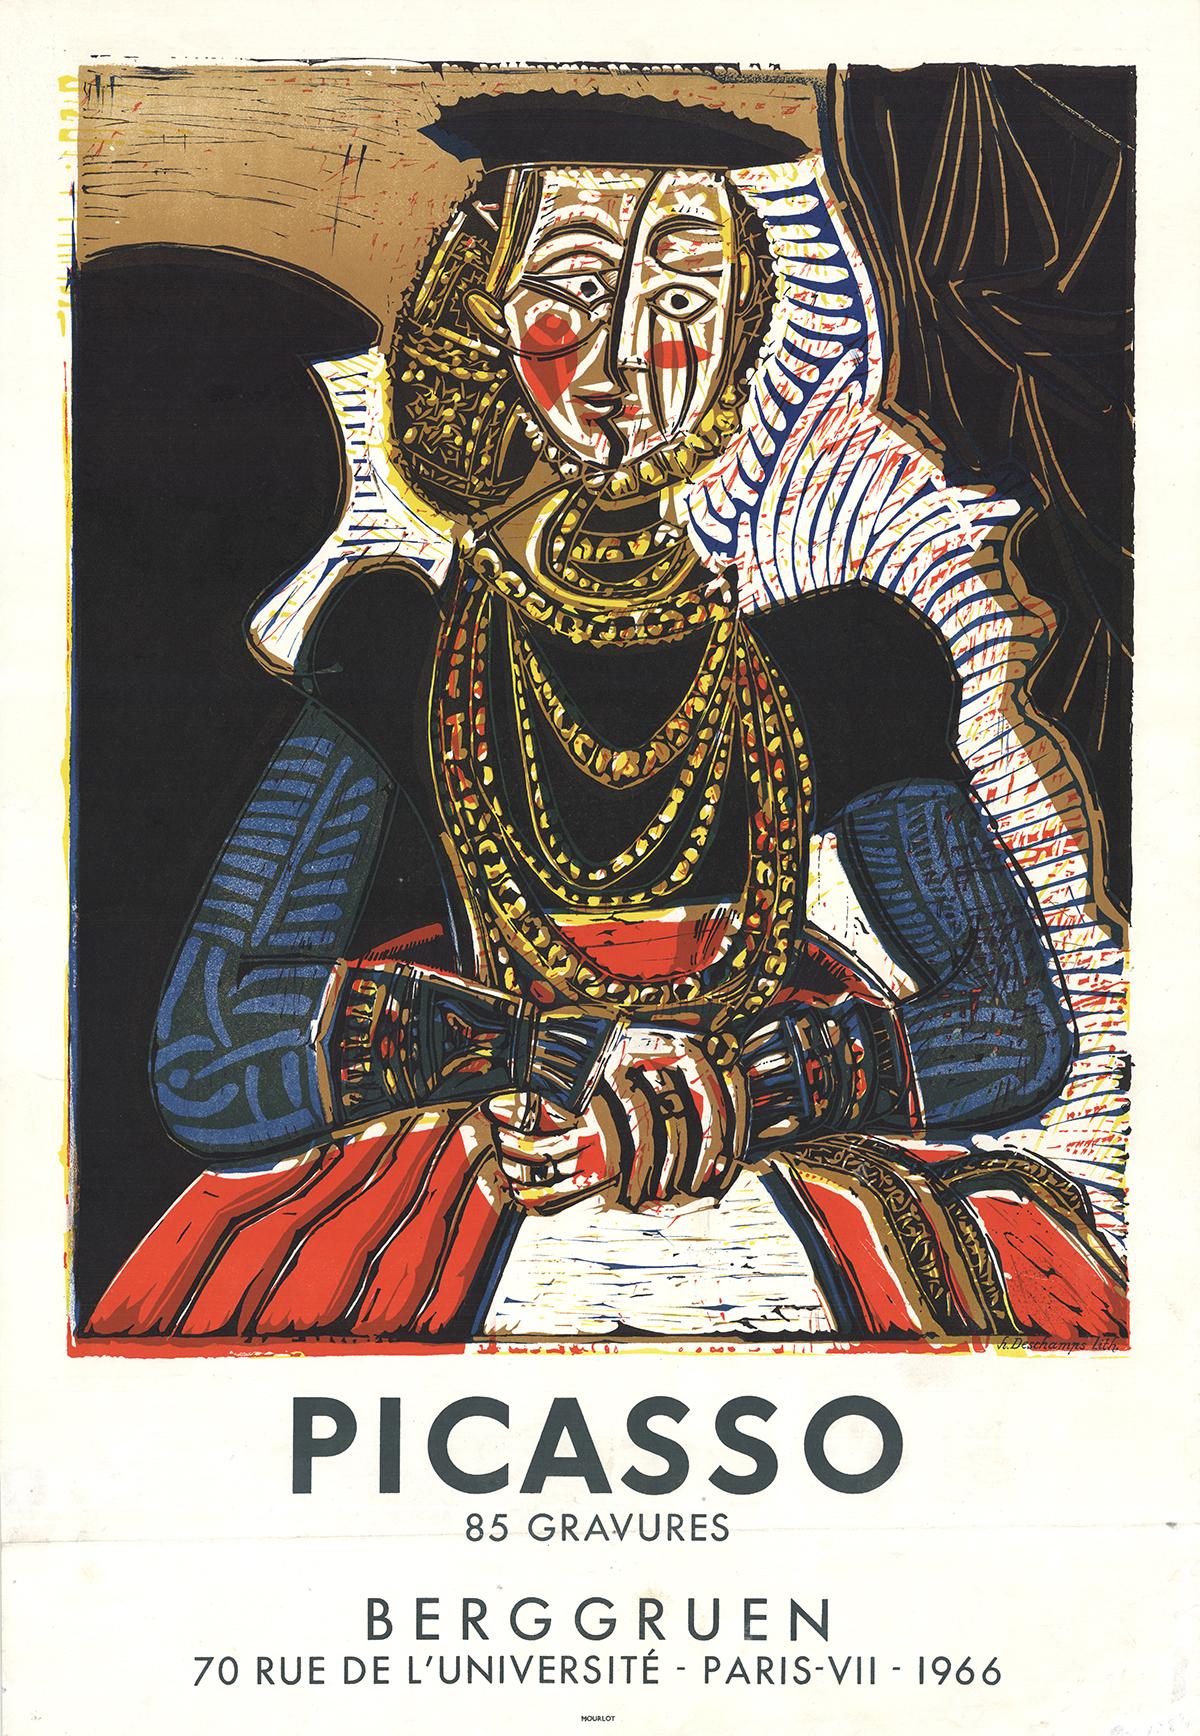 (after) Pablo Picasso Portrait Print - Berggruen, 85 Gravures